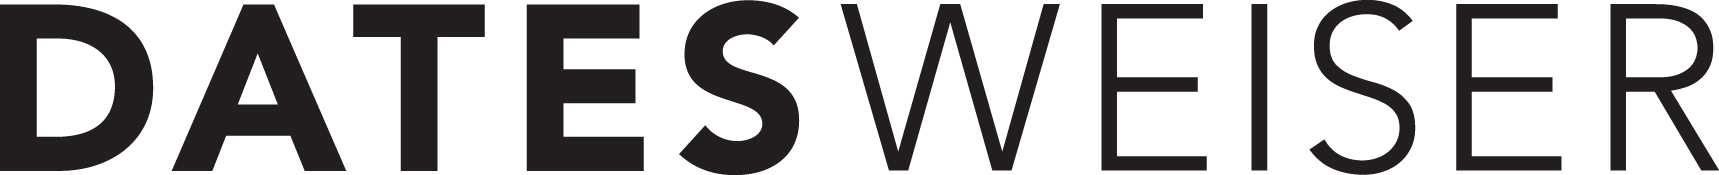 Datesweiser logo